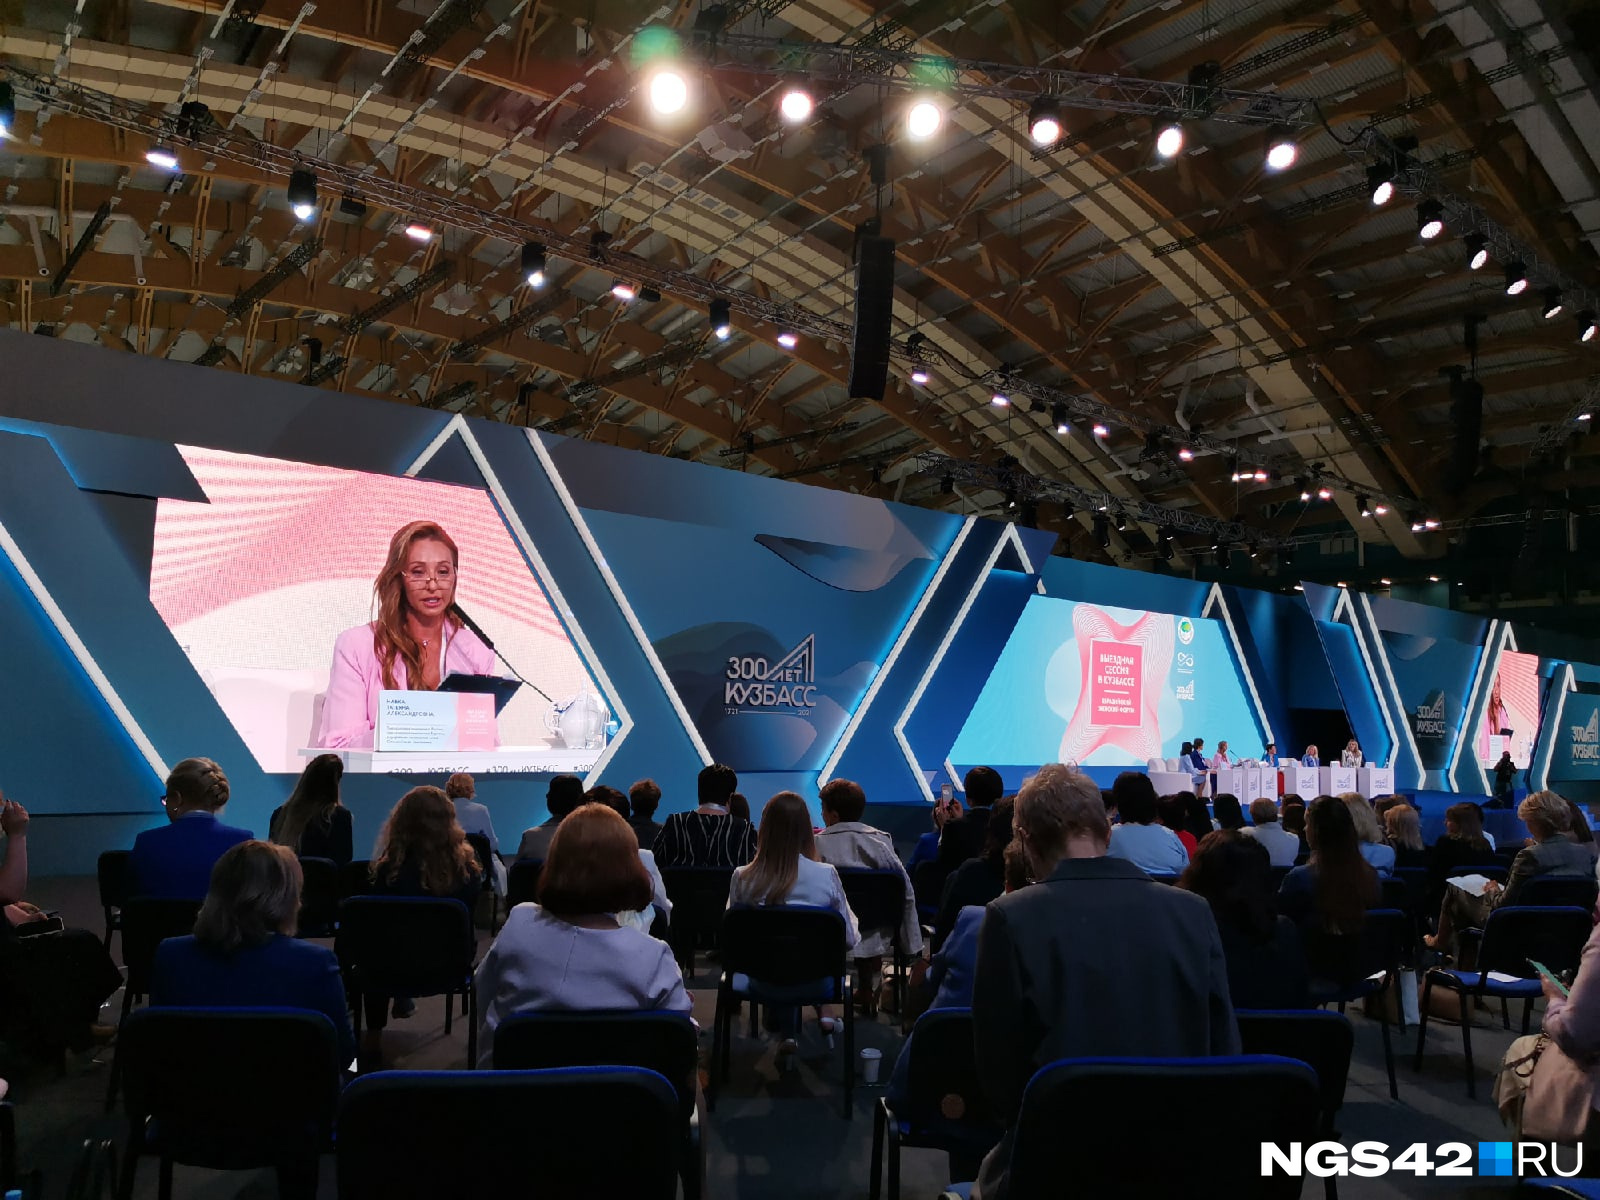 Татьяна Навка в своем выступлении сделала акцент на спорте и достижениях российских фигуристок